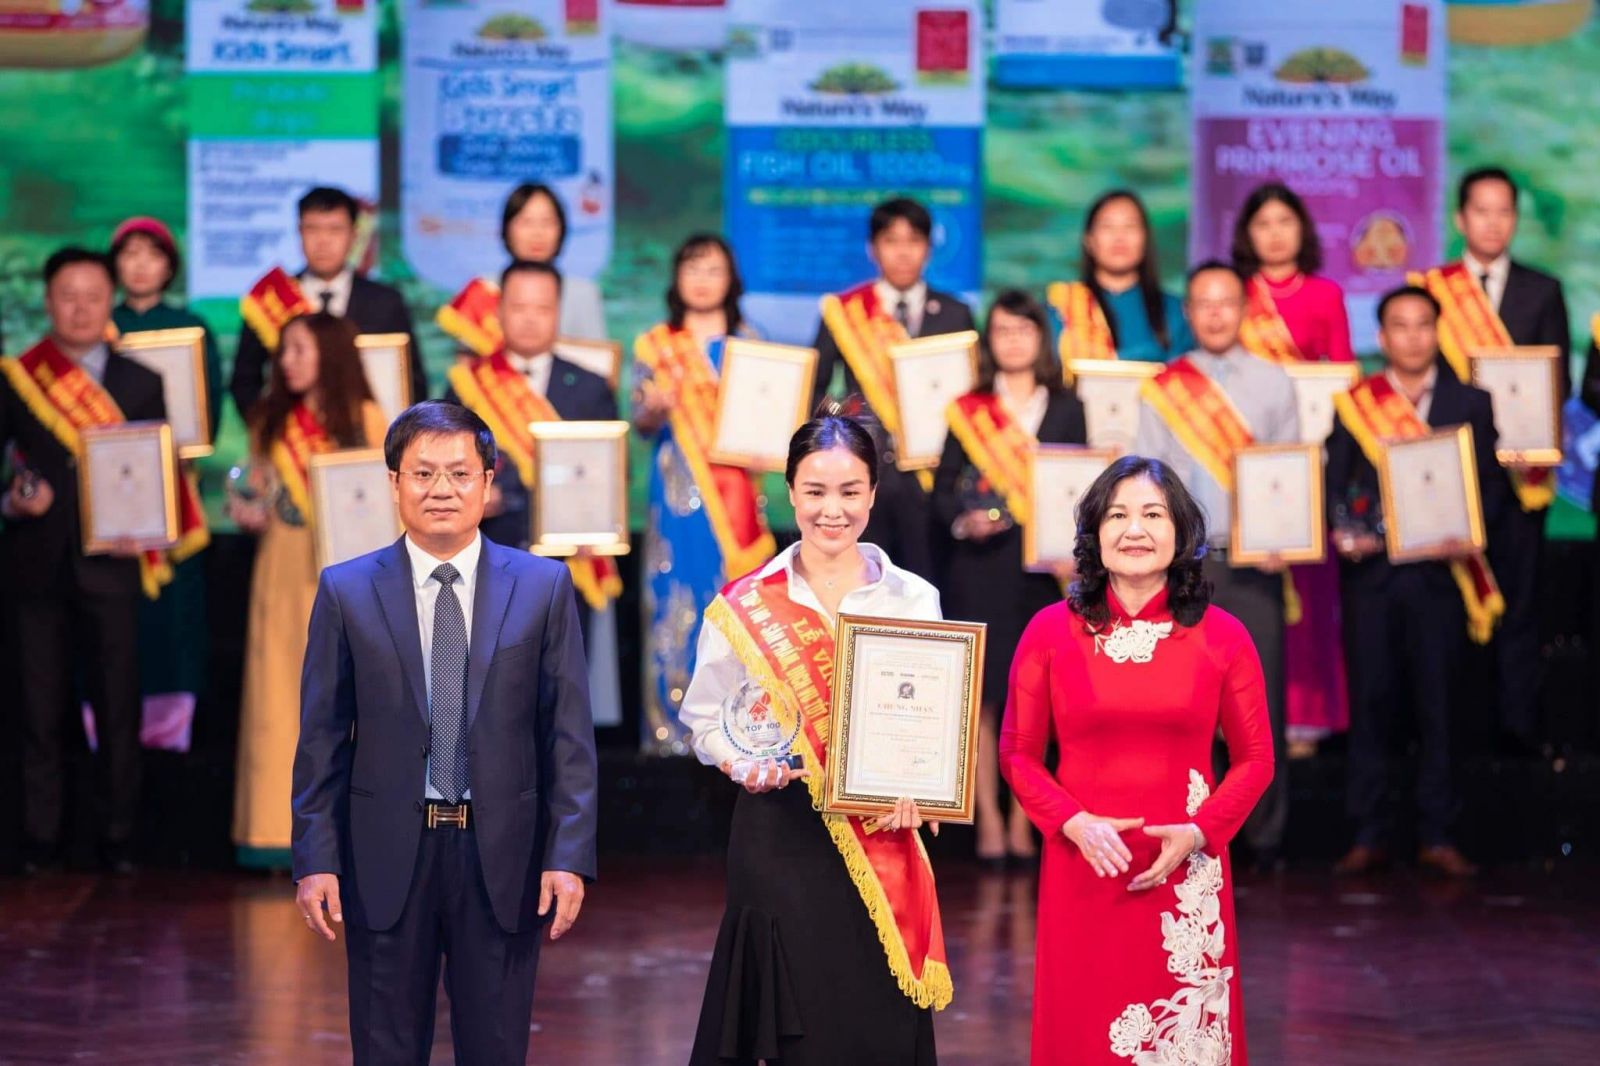 Bà Vũ Thị Lệ đại diện Nature’s Way Việt Nam nhận kỷ niệm chương và chứng nhận tại lễ vinh danh